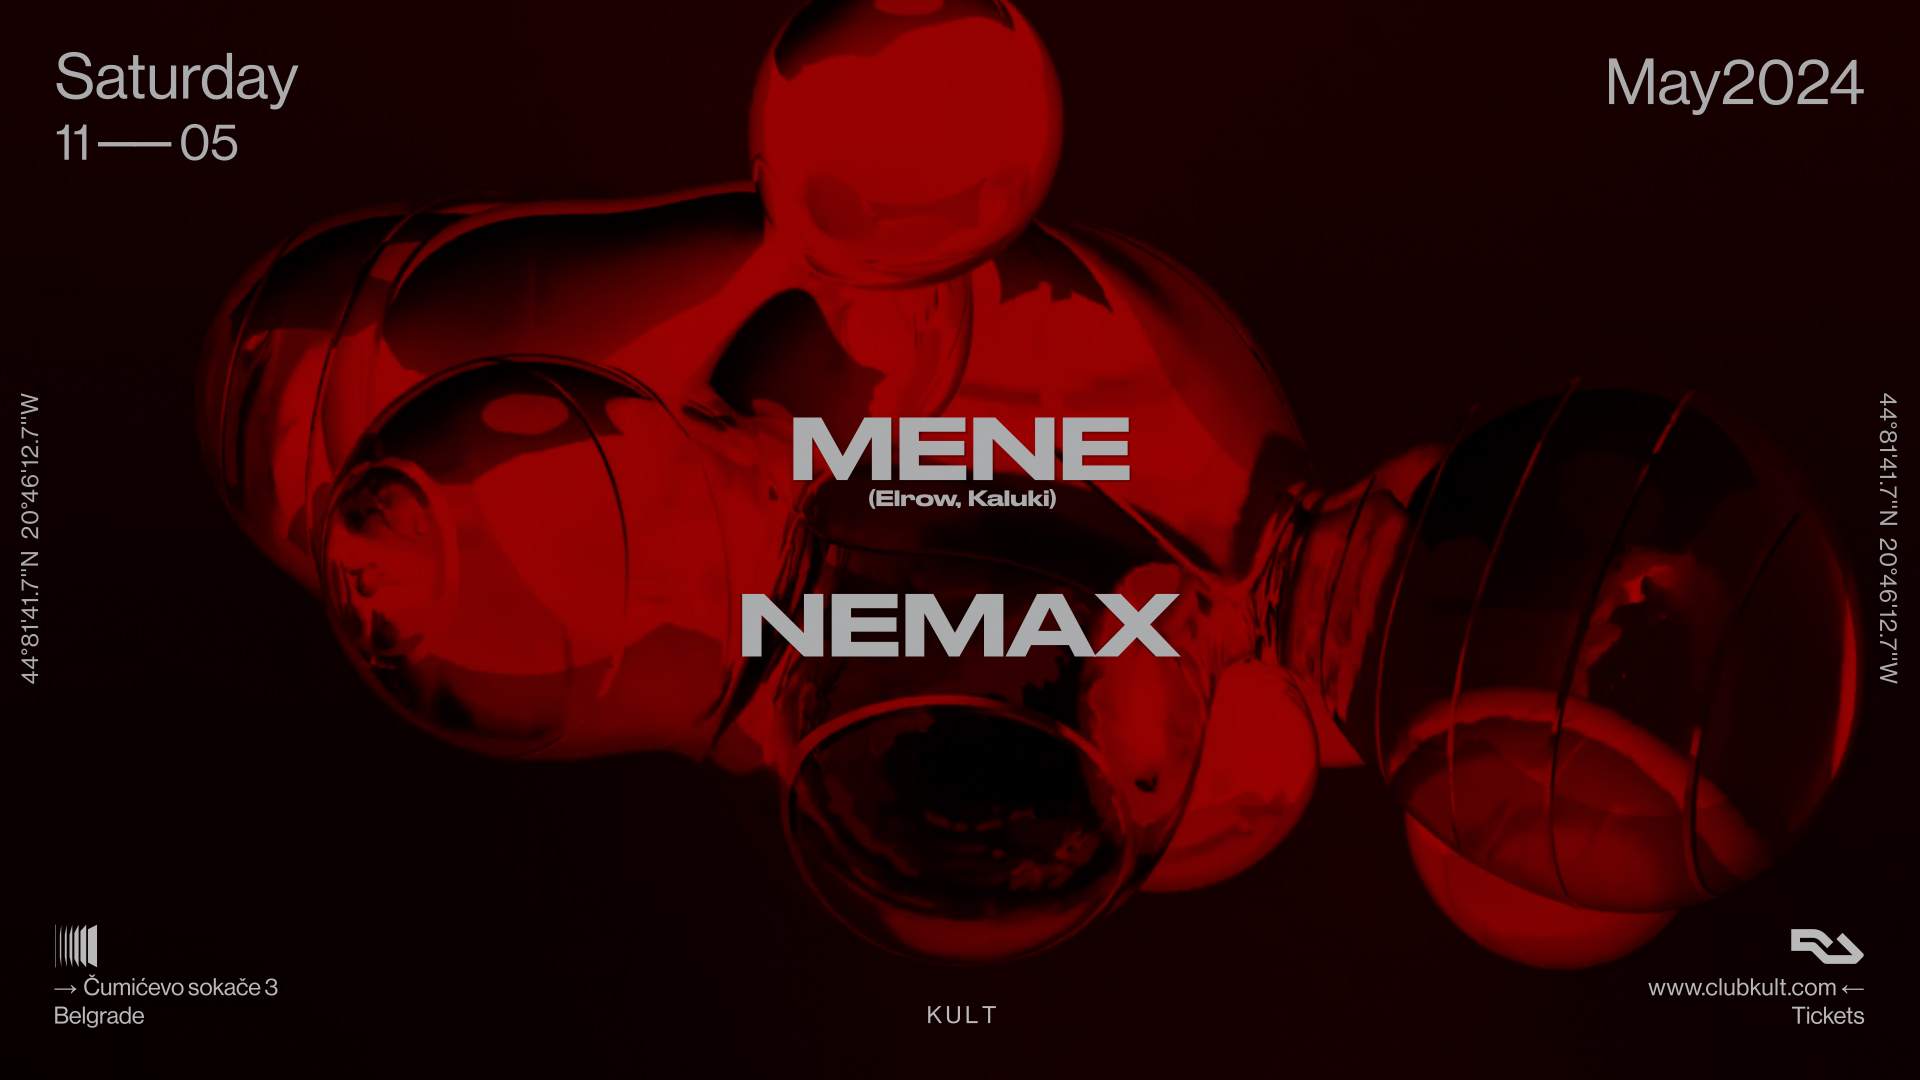 KULT pres. Mene + Nemax - Página frontal